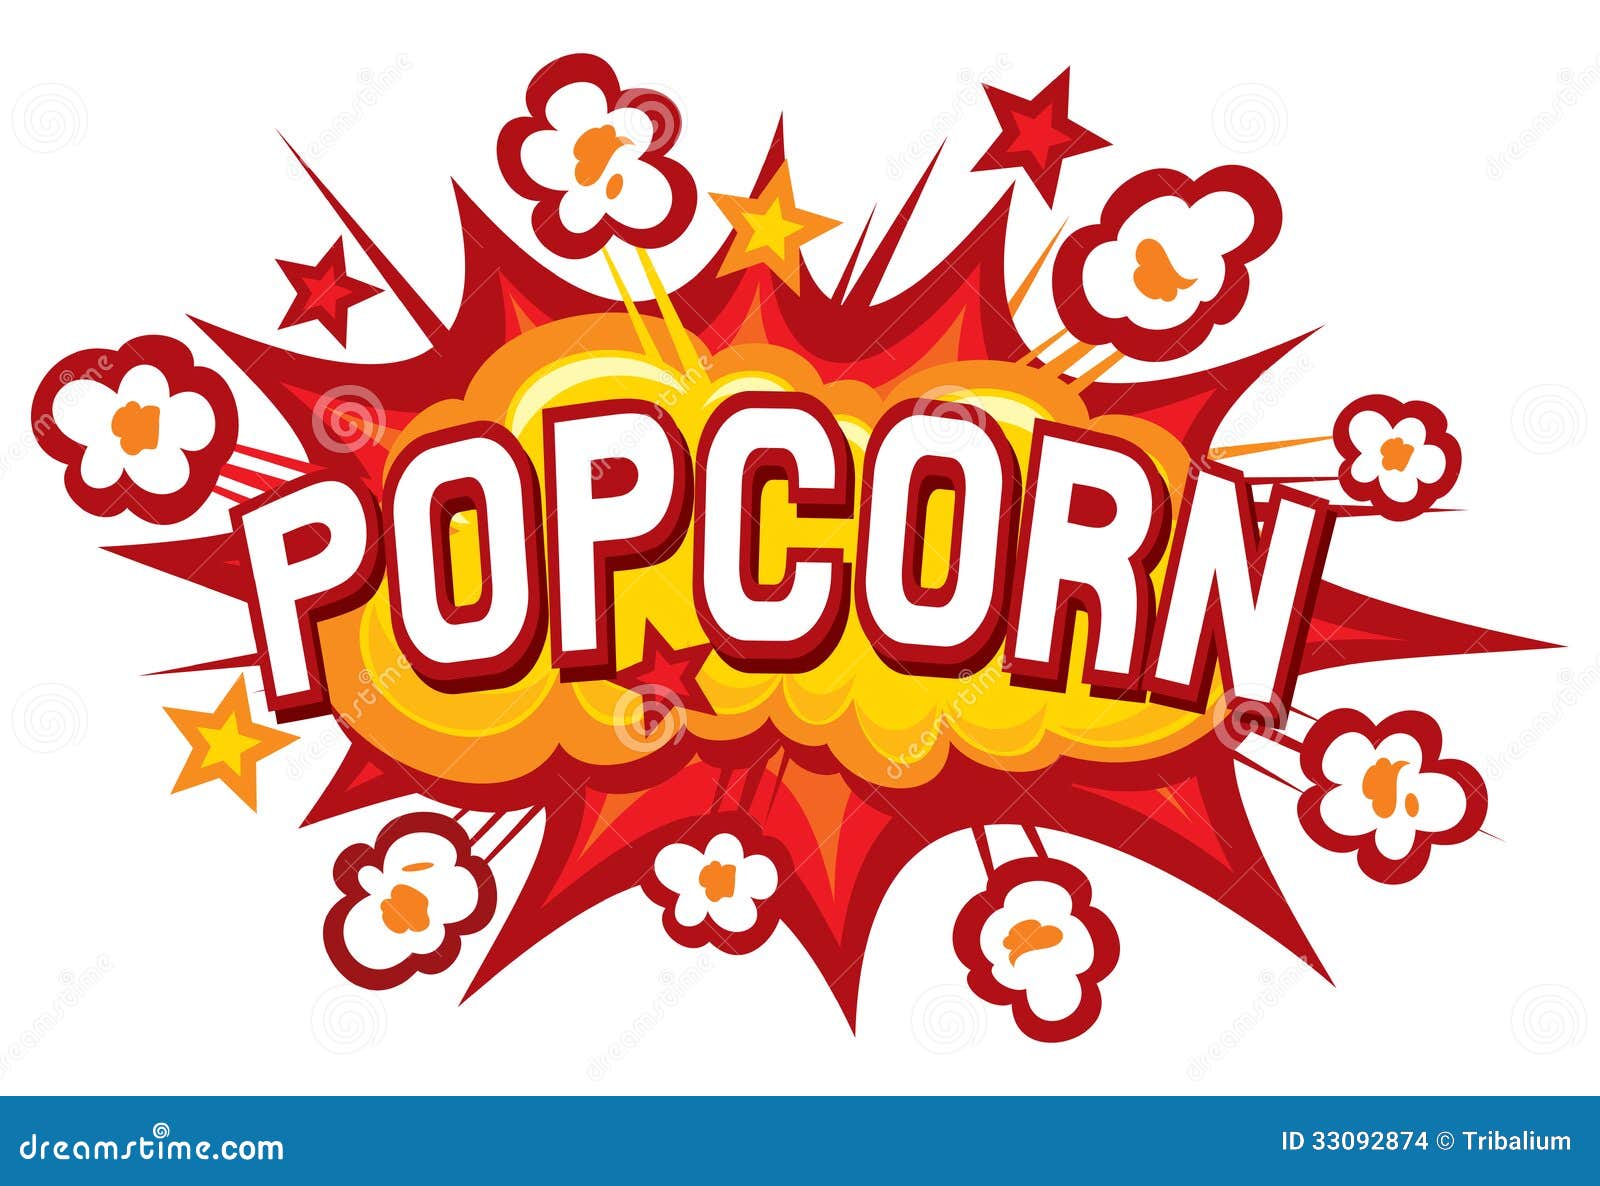 popcorn-design-illustration-symbol-explosion-33092874.jpg